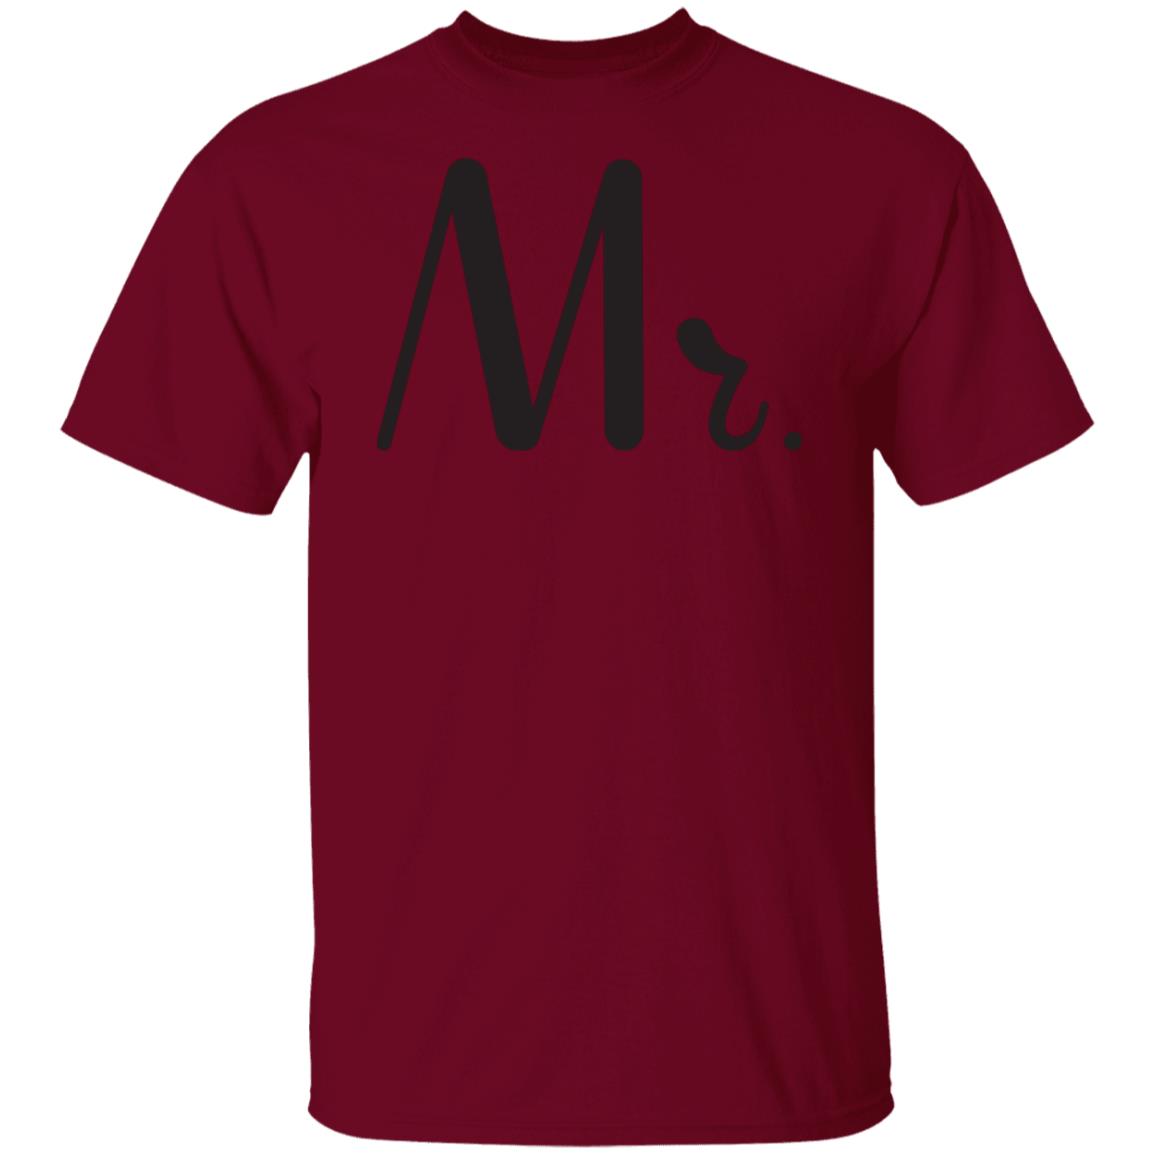 Mr. & Mrs. Matching T-Shirts